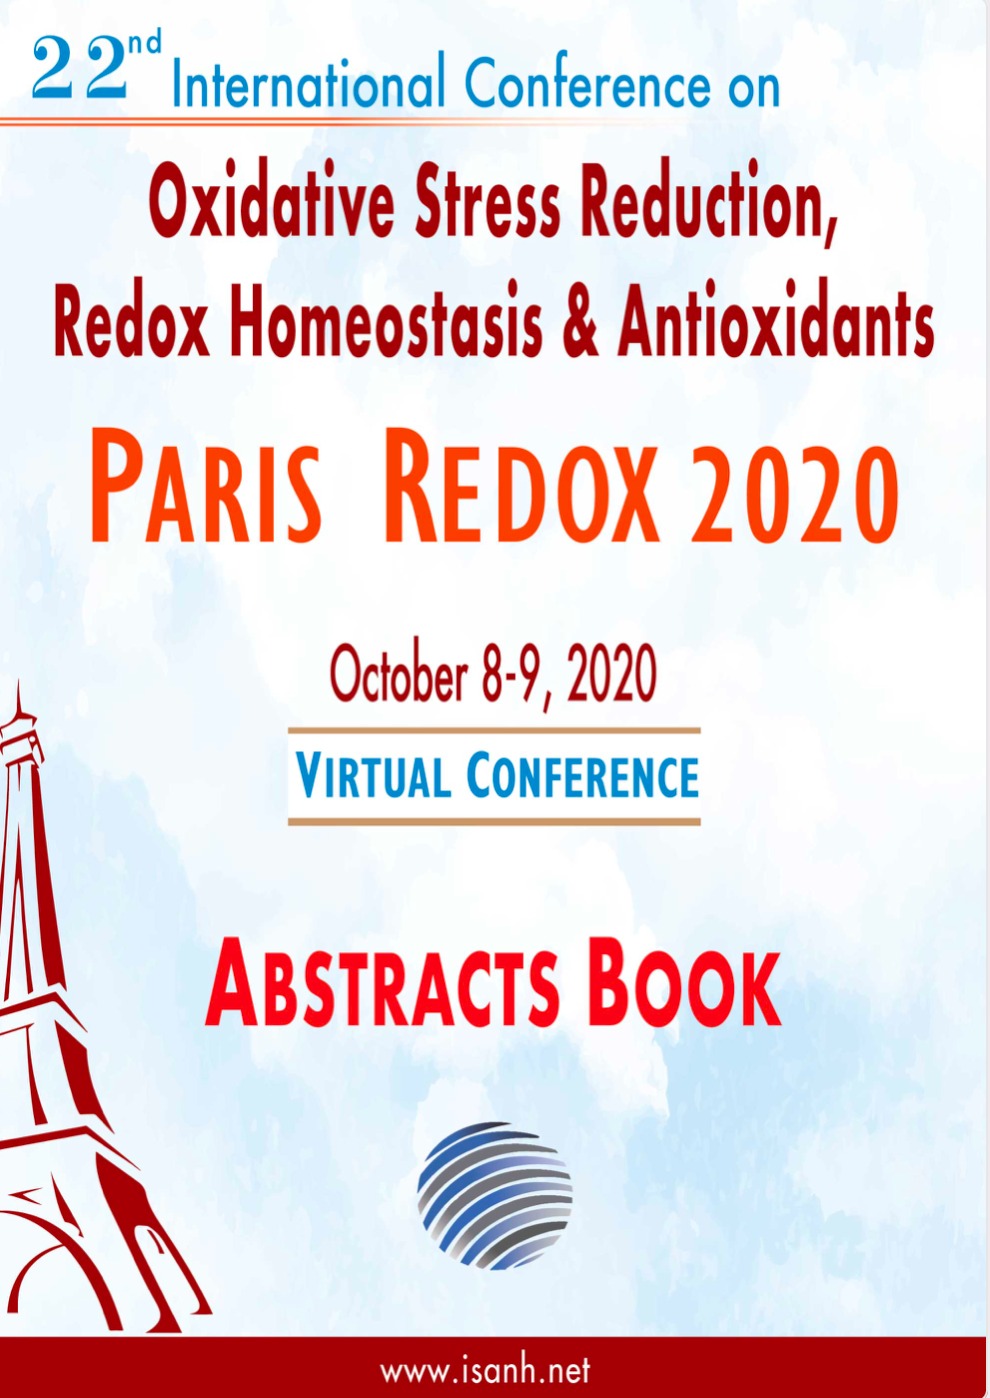 Paris Redox 2020 abstract book